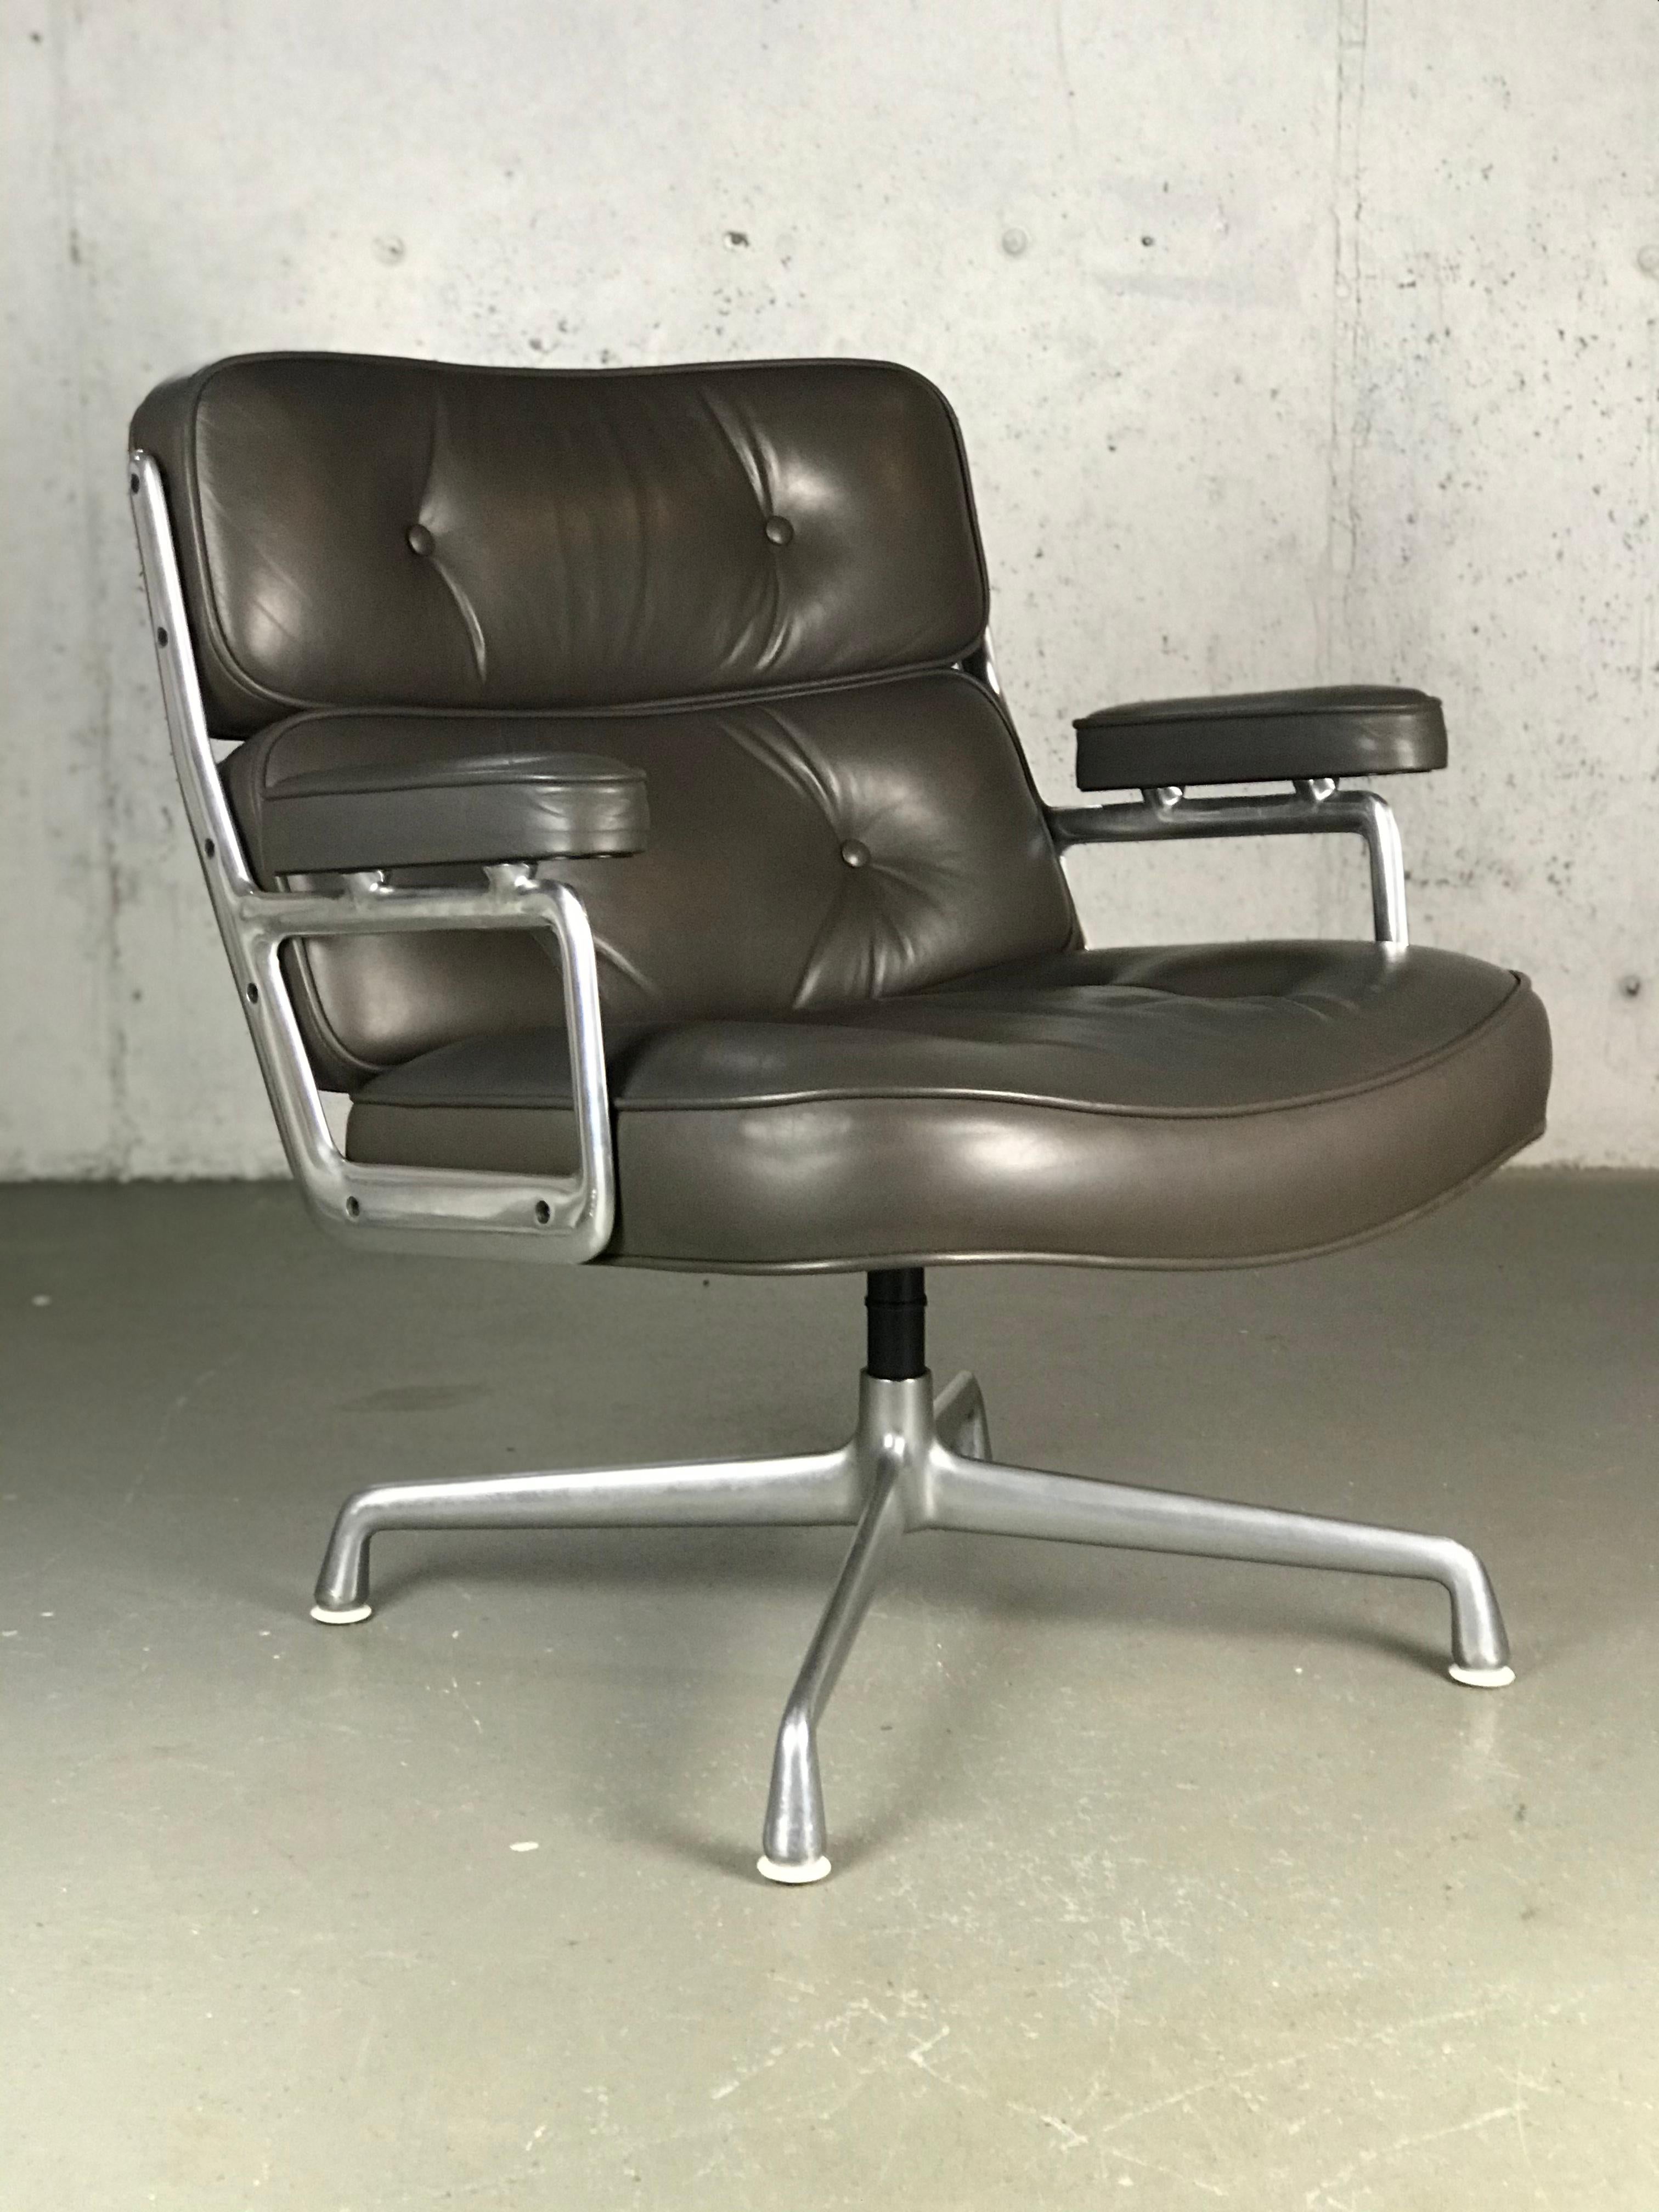 Executive Lounge Chair von Charles und Ray Eames. Ursprünglicher Zustand. Graues Original-Leder mit hellbrauner Tönung. Der Aluminiumrahmen hat Abnutzungserscheinungen - auch das Leder hat einige Abnutzungserscheinungen. Andeutung im oberen Teil.